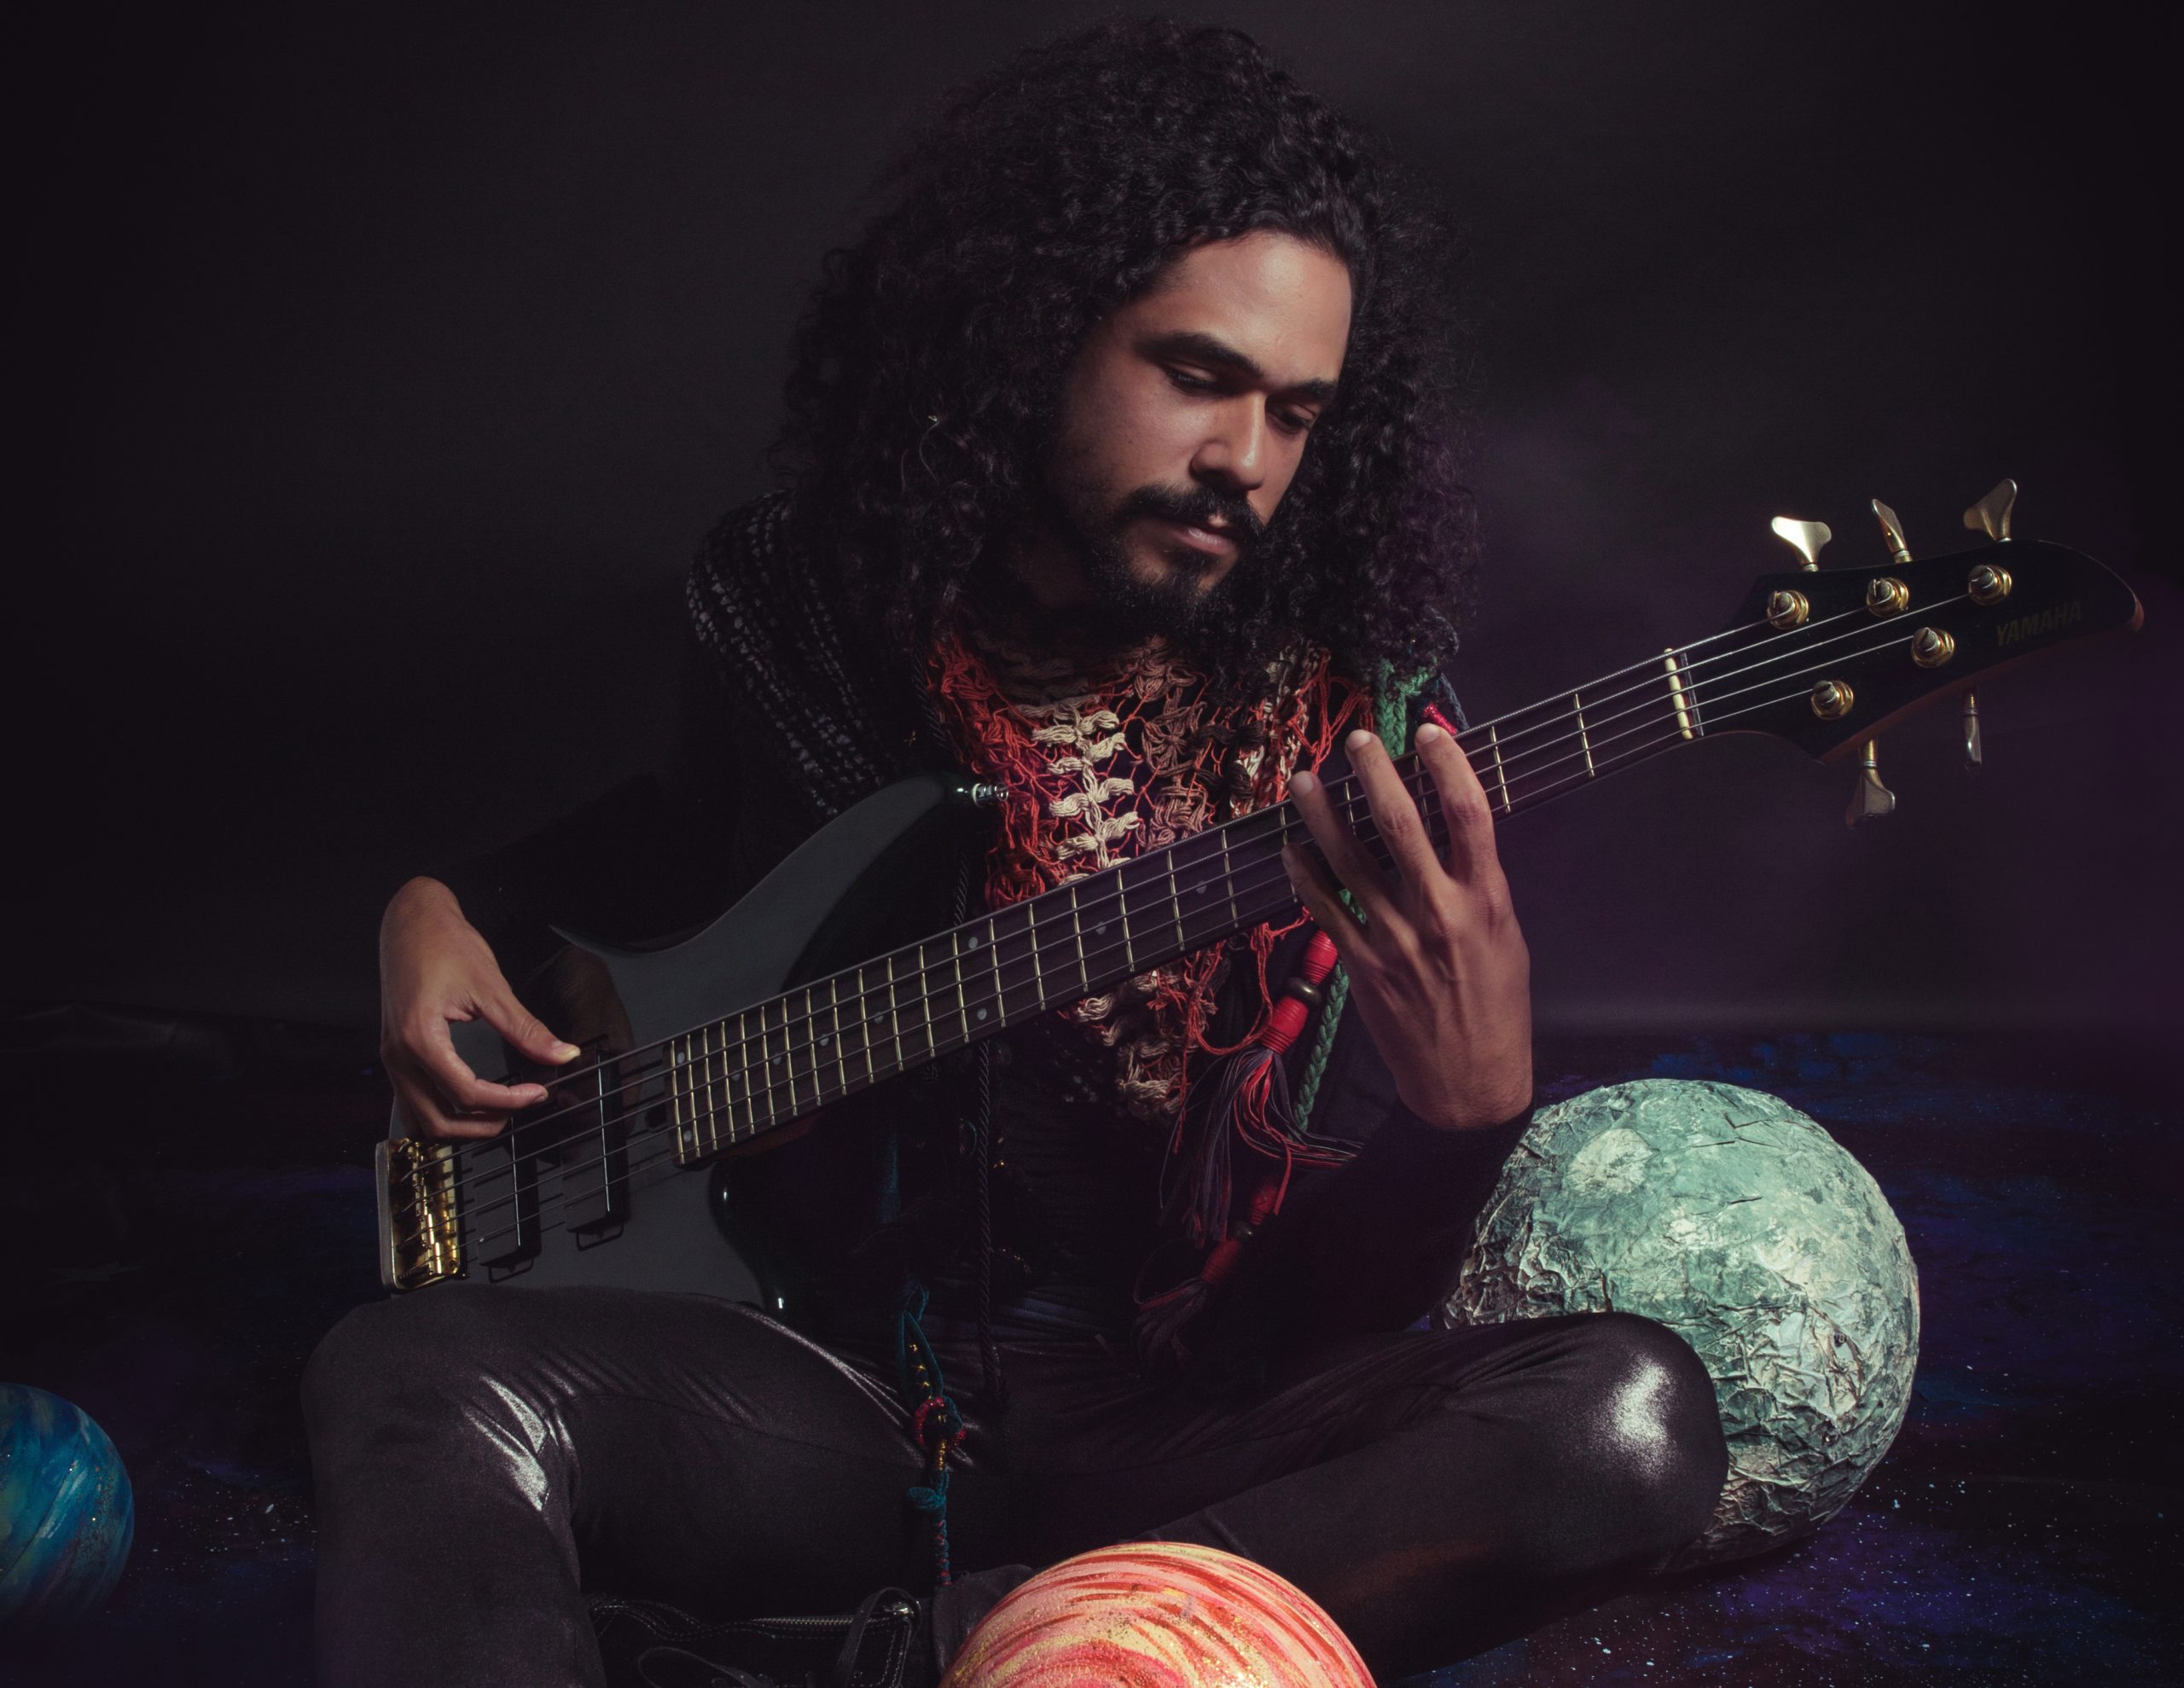 Oficina de música: o músico Zéis segura uma guitarra em meio a um cenário com temática de planetas. Ele é um homem negro, usa cabelo grande e cacheado e bigode e um xale colorido.